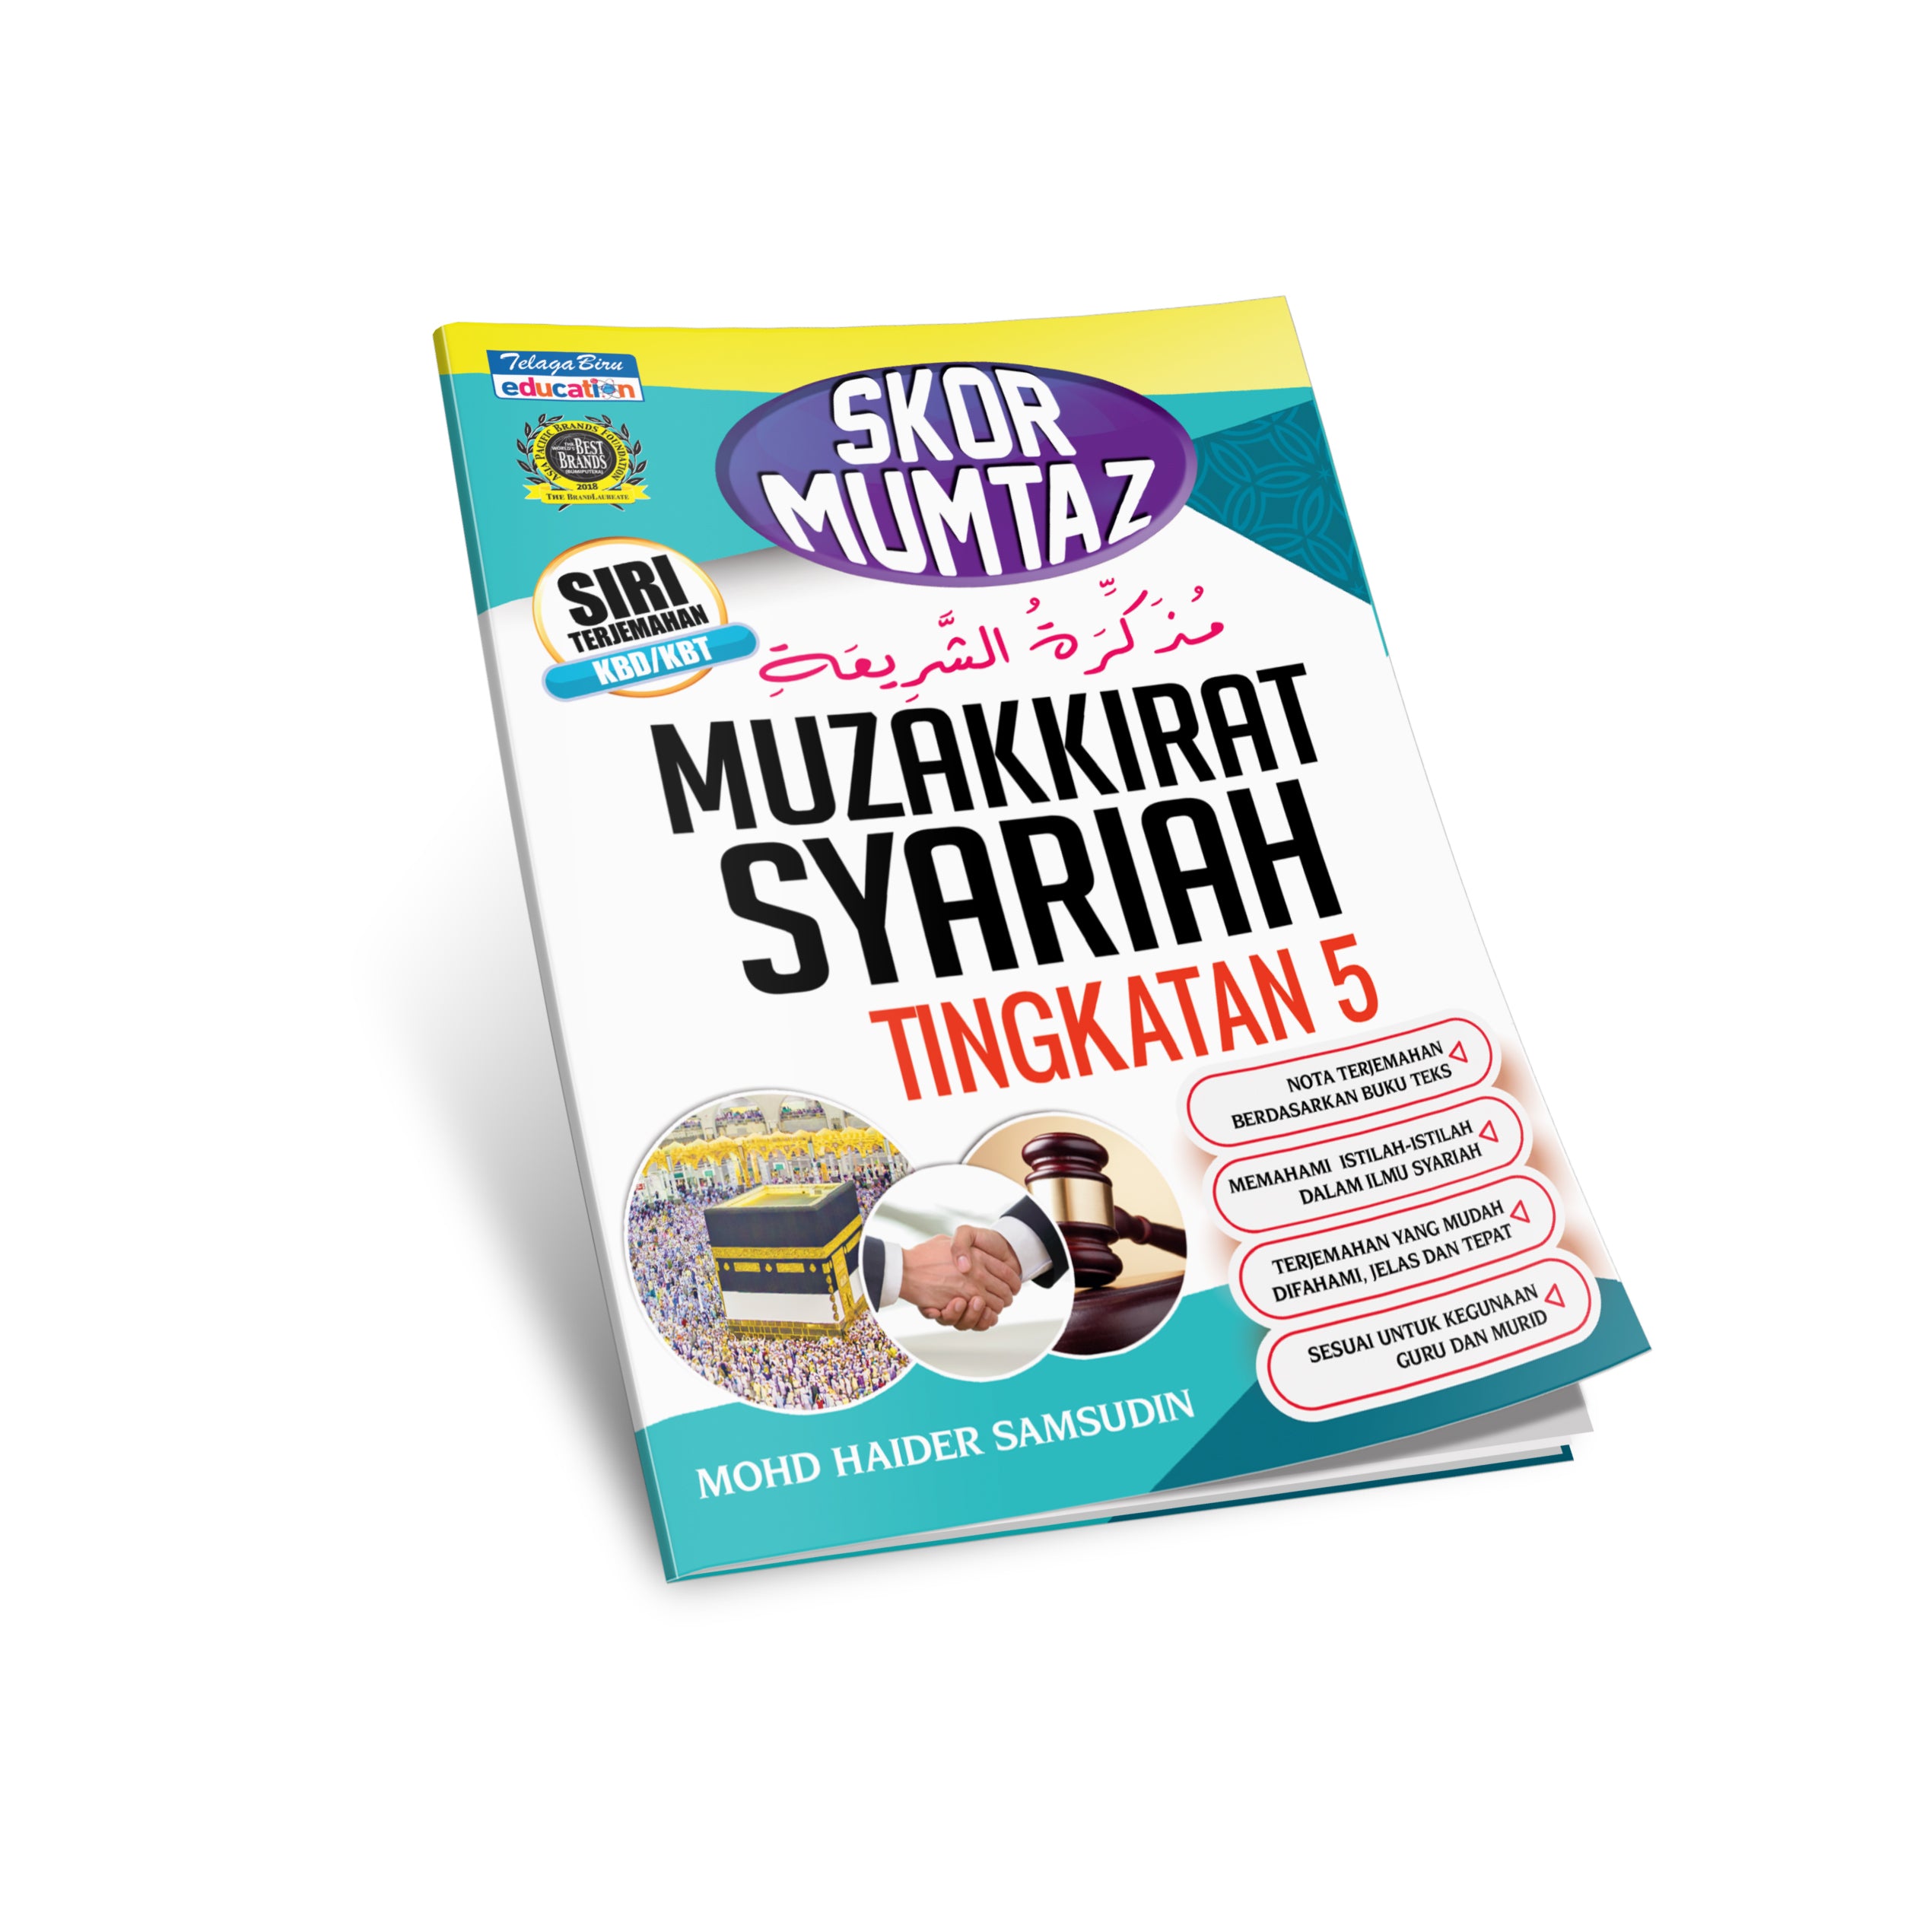 Skor Mumtaz - Muzakkirat Syariah Tingkatan 5- (TBBS1175)